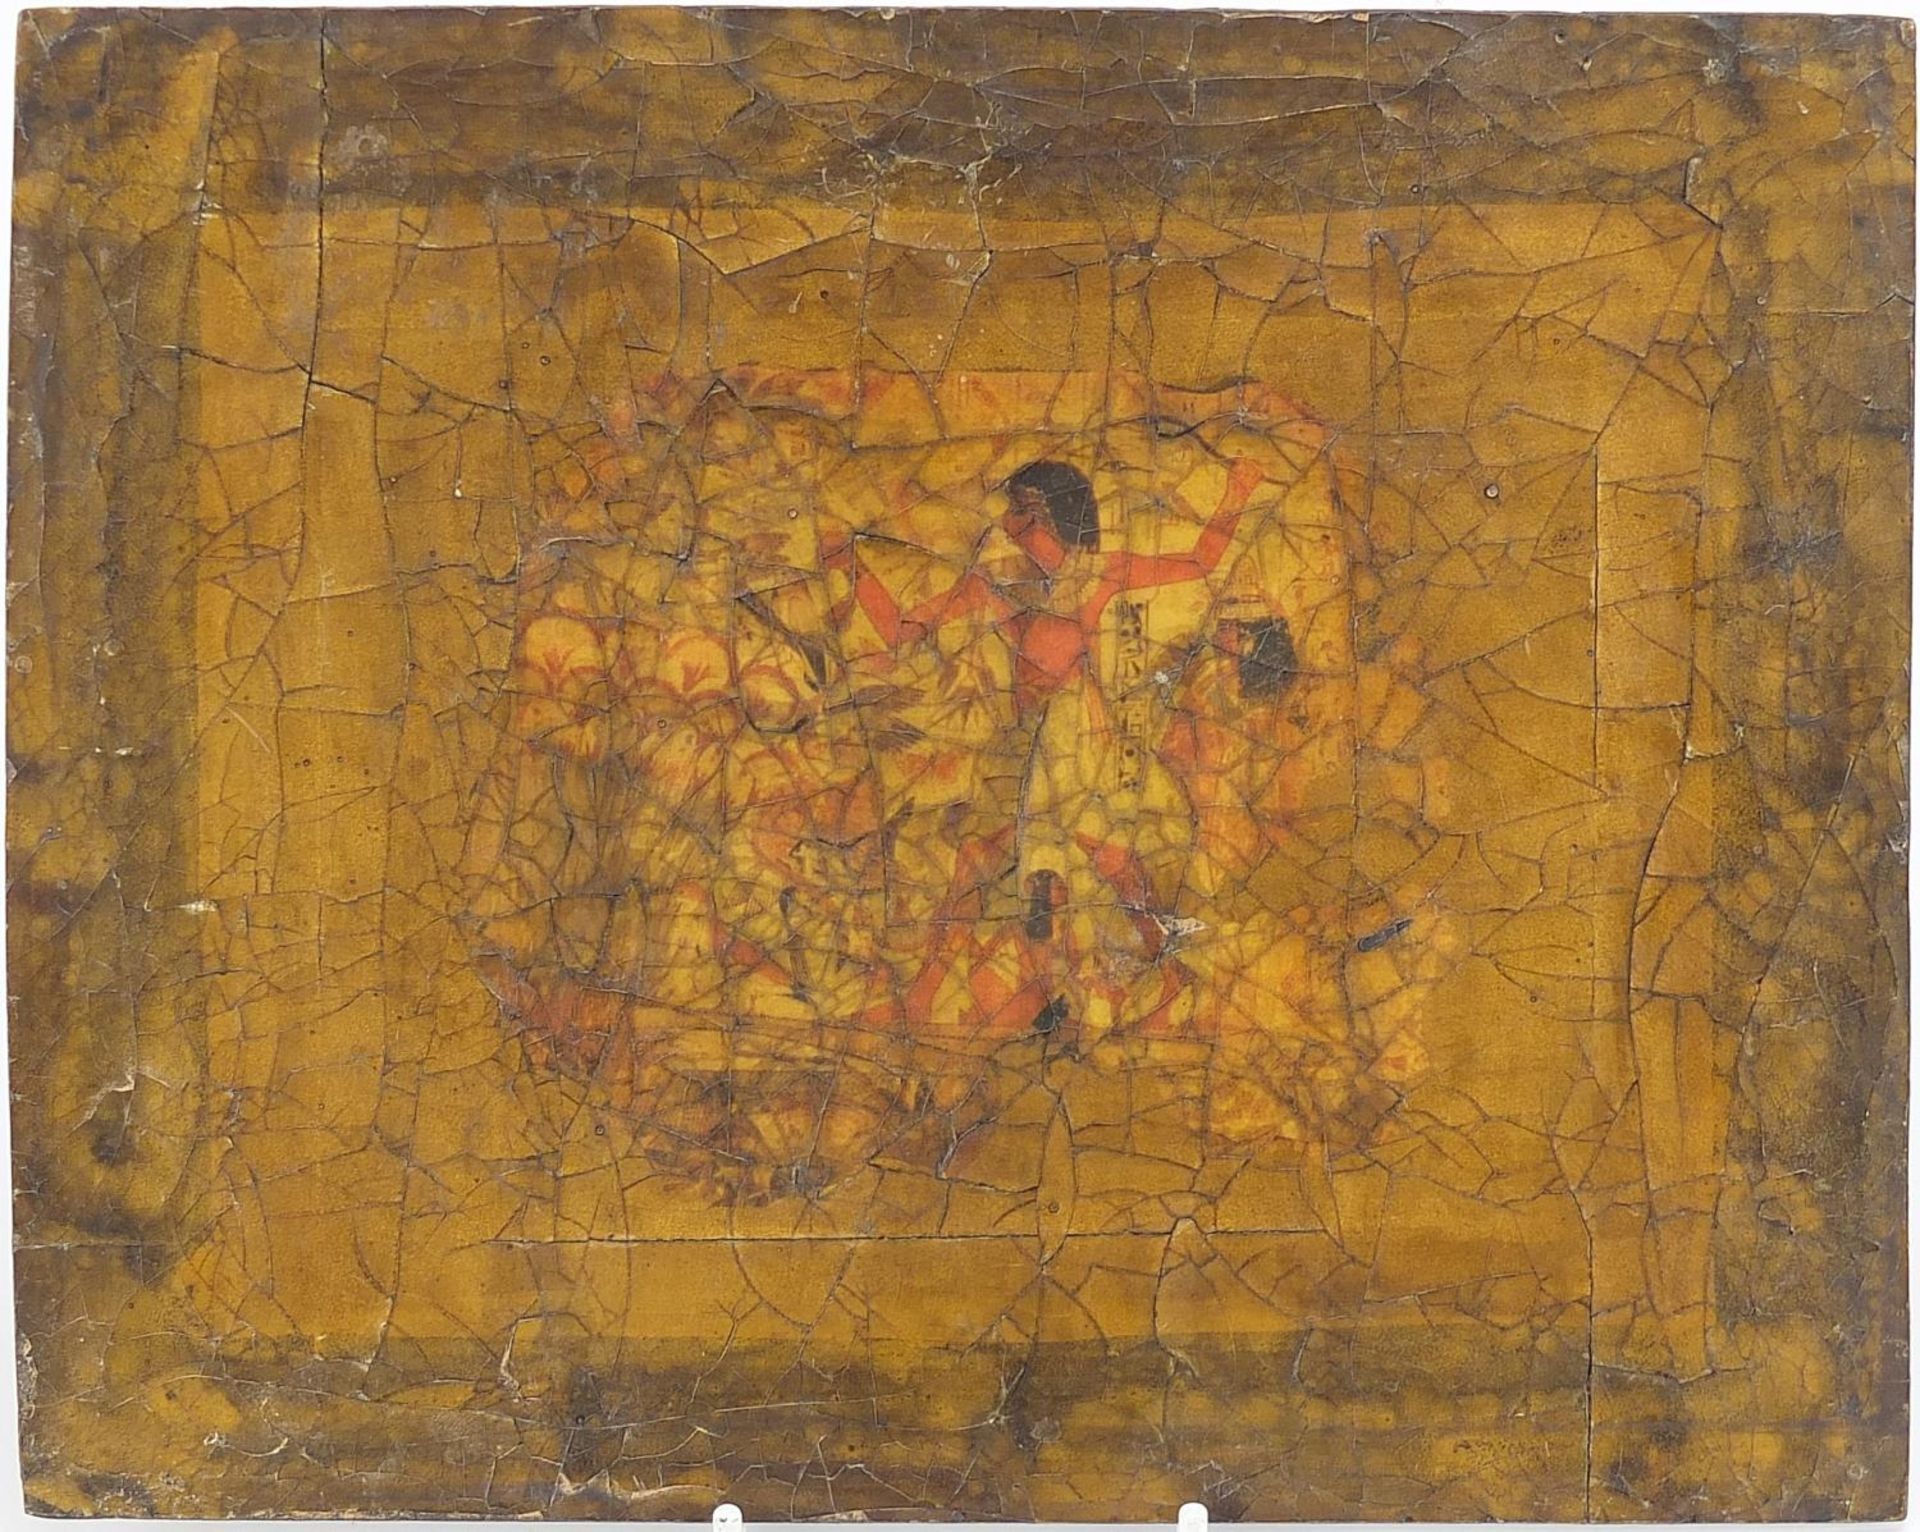 Eyptian papier mache panel, 25cm x 20cm